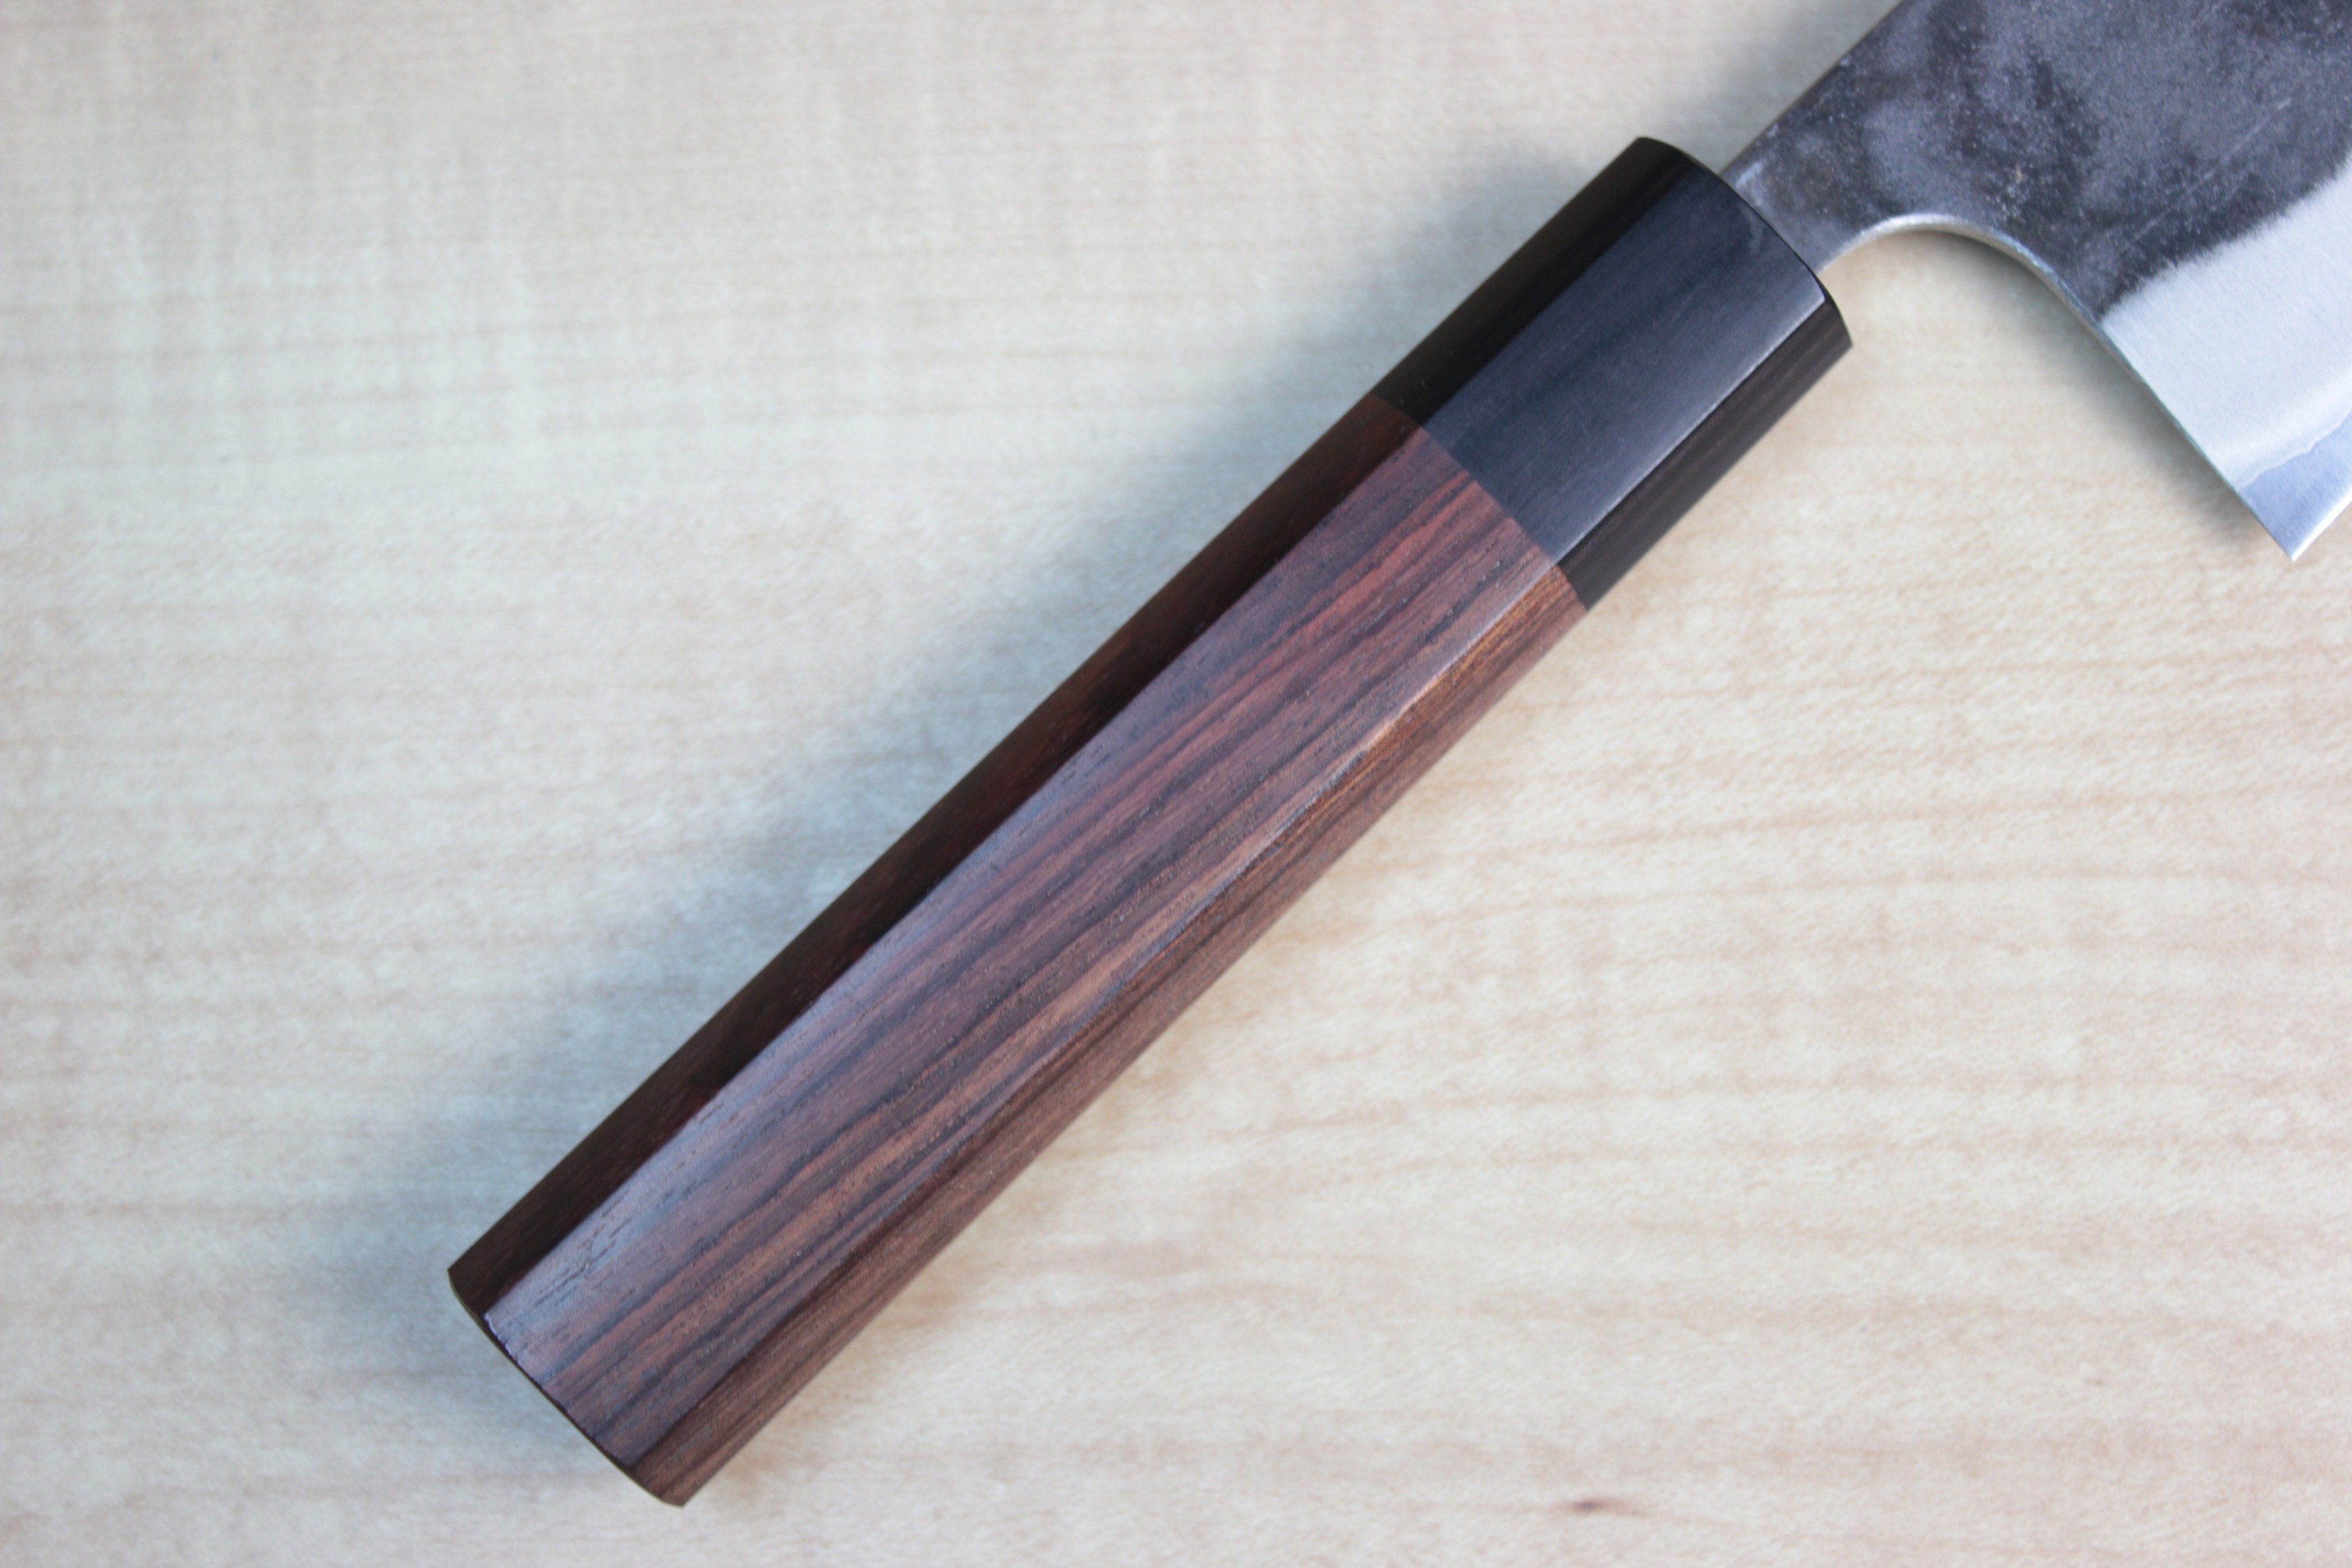 https://japanesechefsknife.com/cdn/shop/products/fu-rin-ka-zan-bunka-fu-rin-ka-zan-aogami-super-kurouchi-series-fab-6-bunka-185mm-7-2-inch-octagon-shaped-red-sandal-wood-handle-23308511694.jpg?v=1560526188